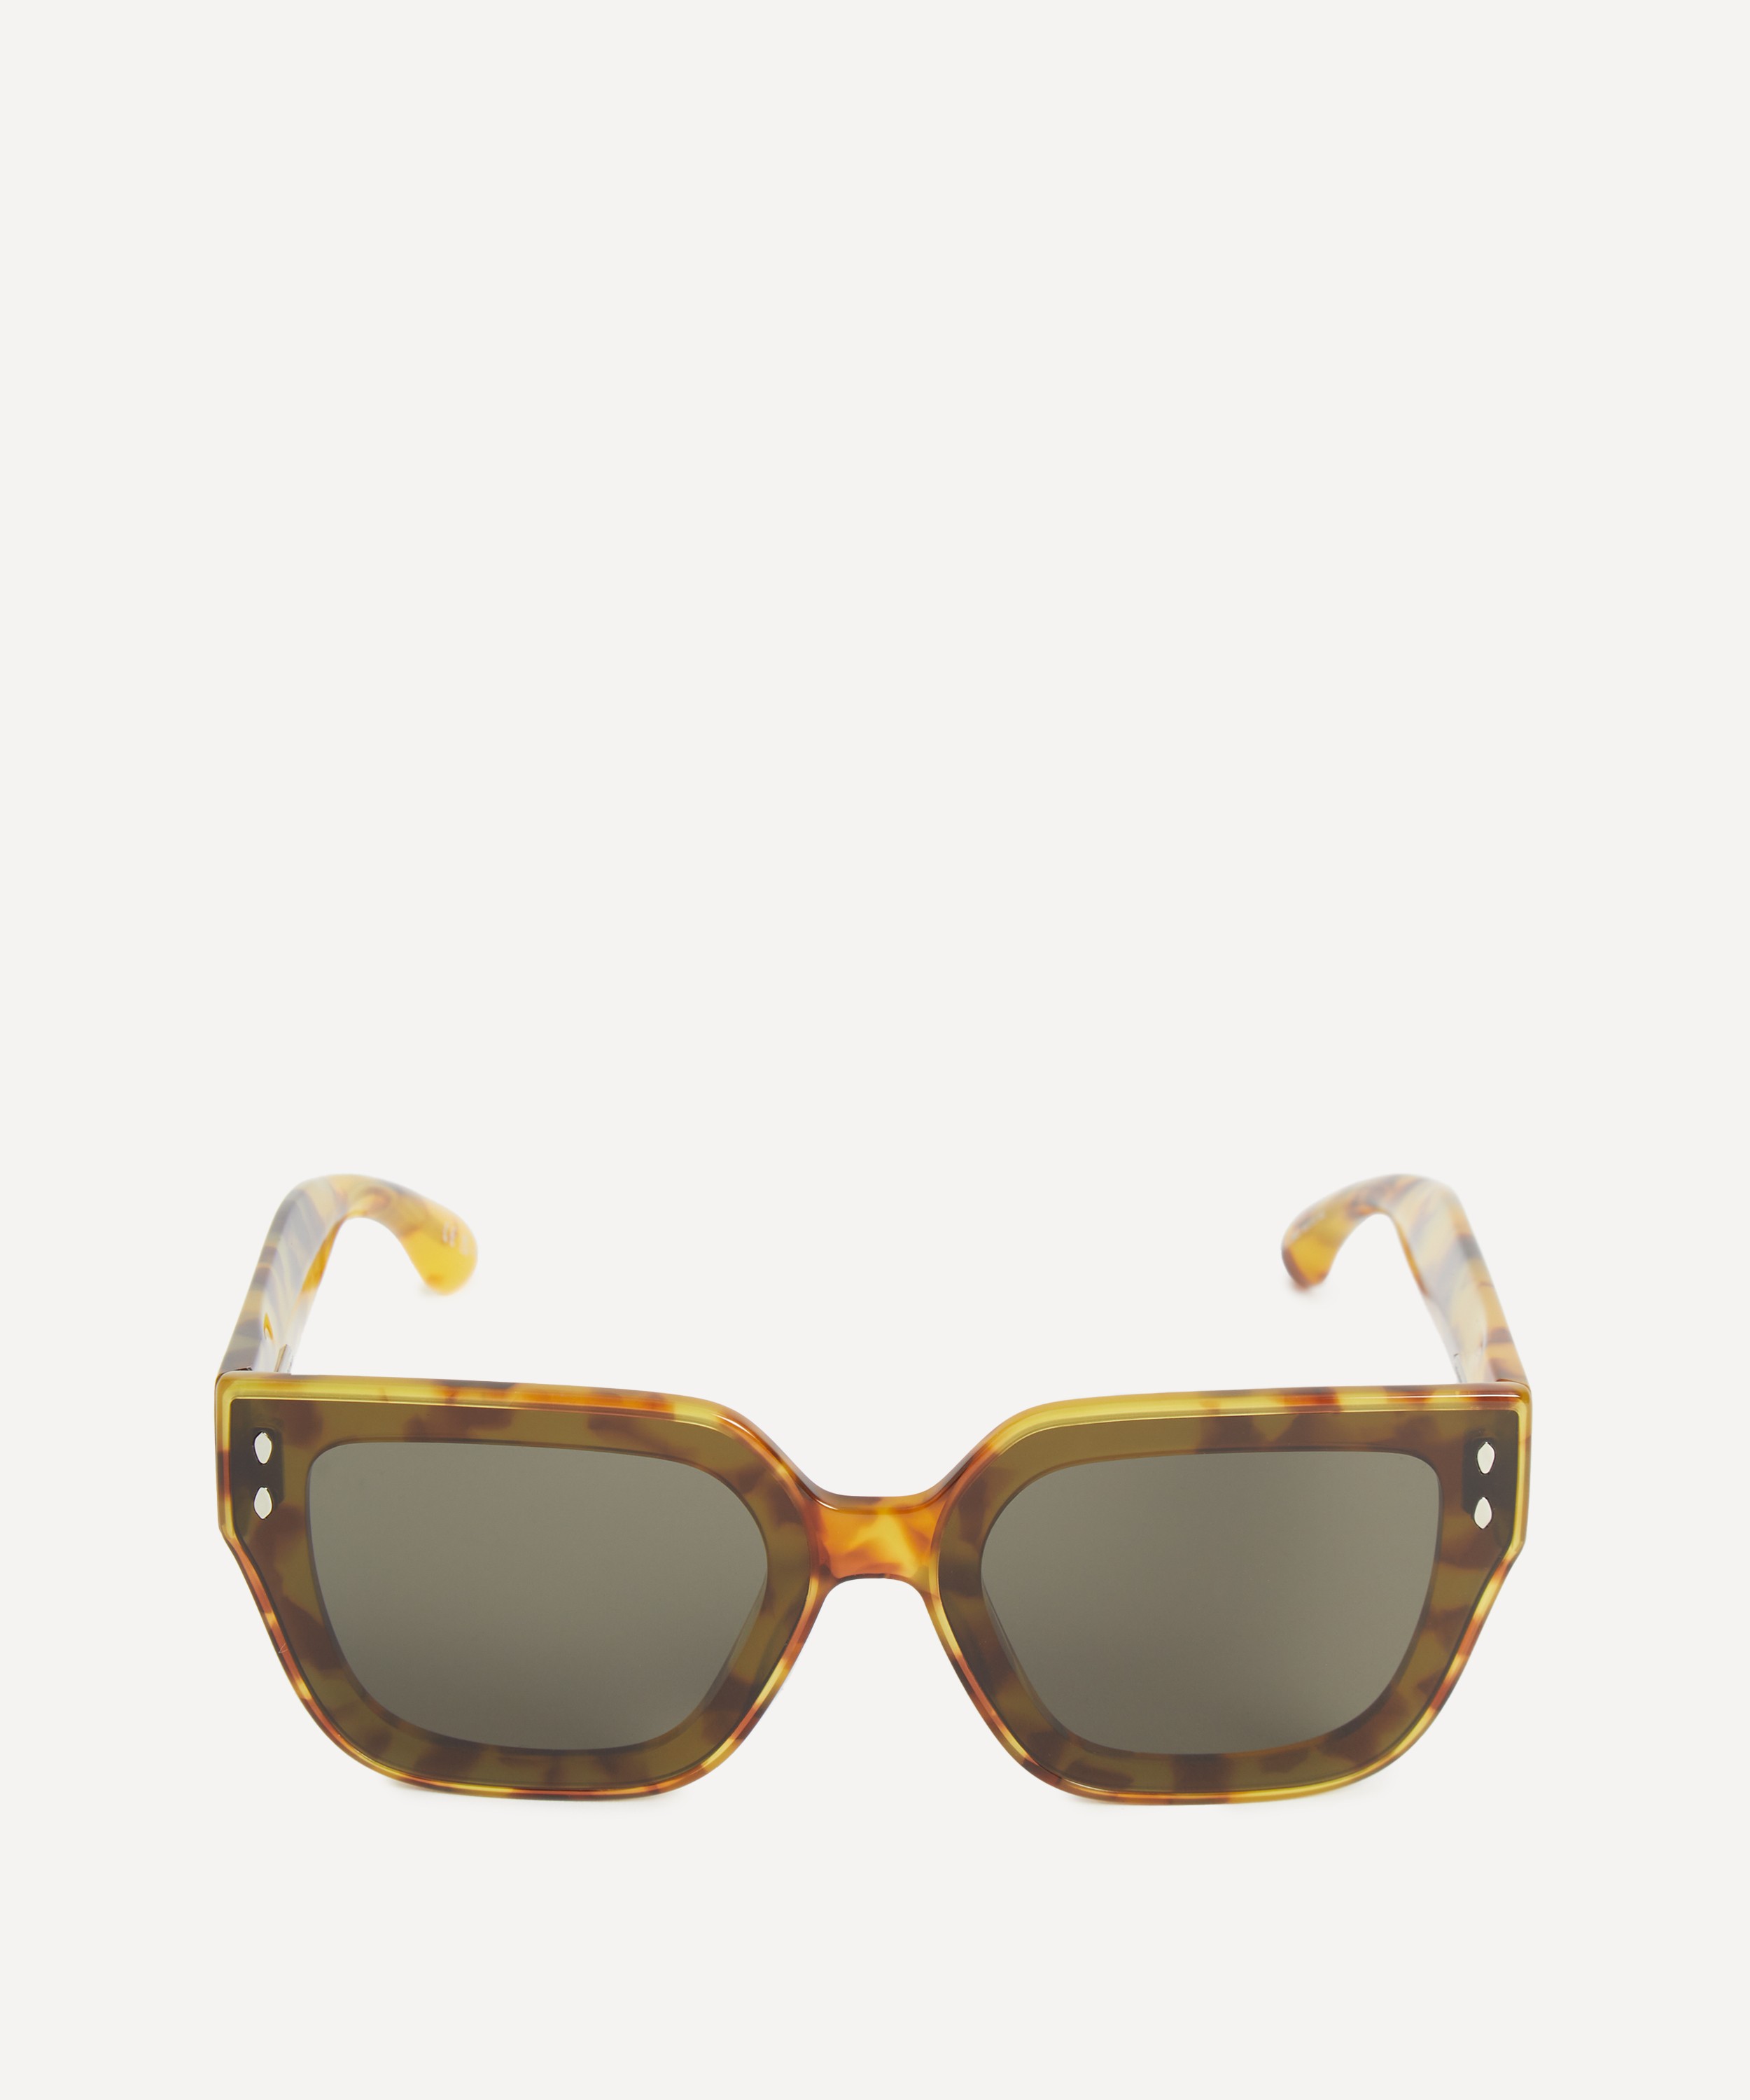 Isabel Marant - Oversized Cat-Eye Sunglasses